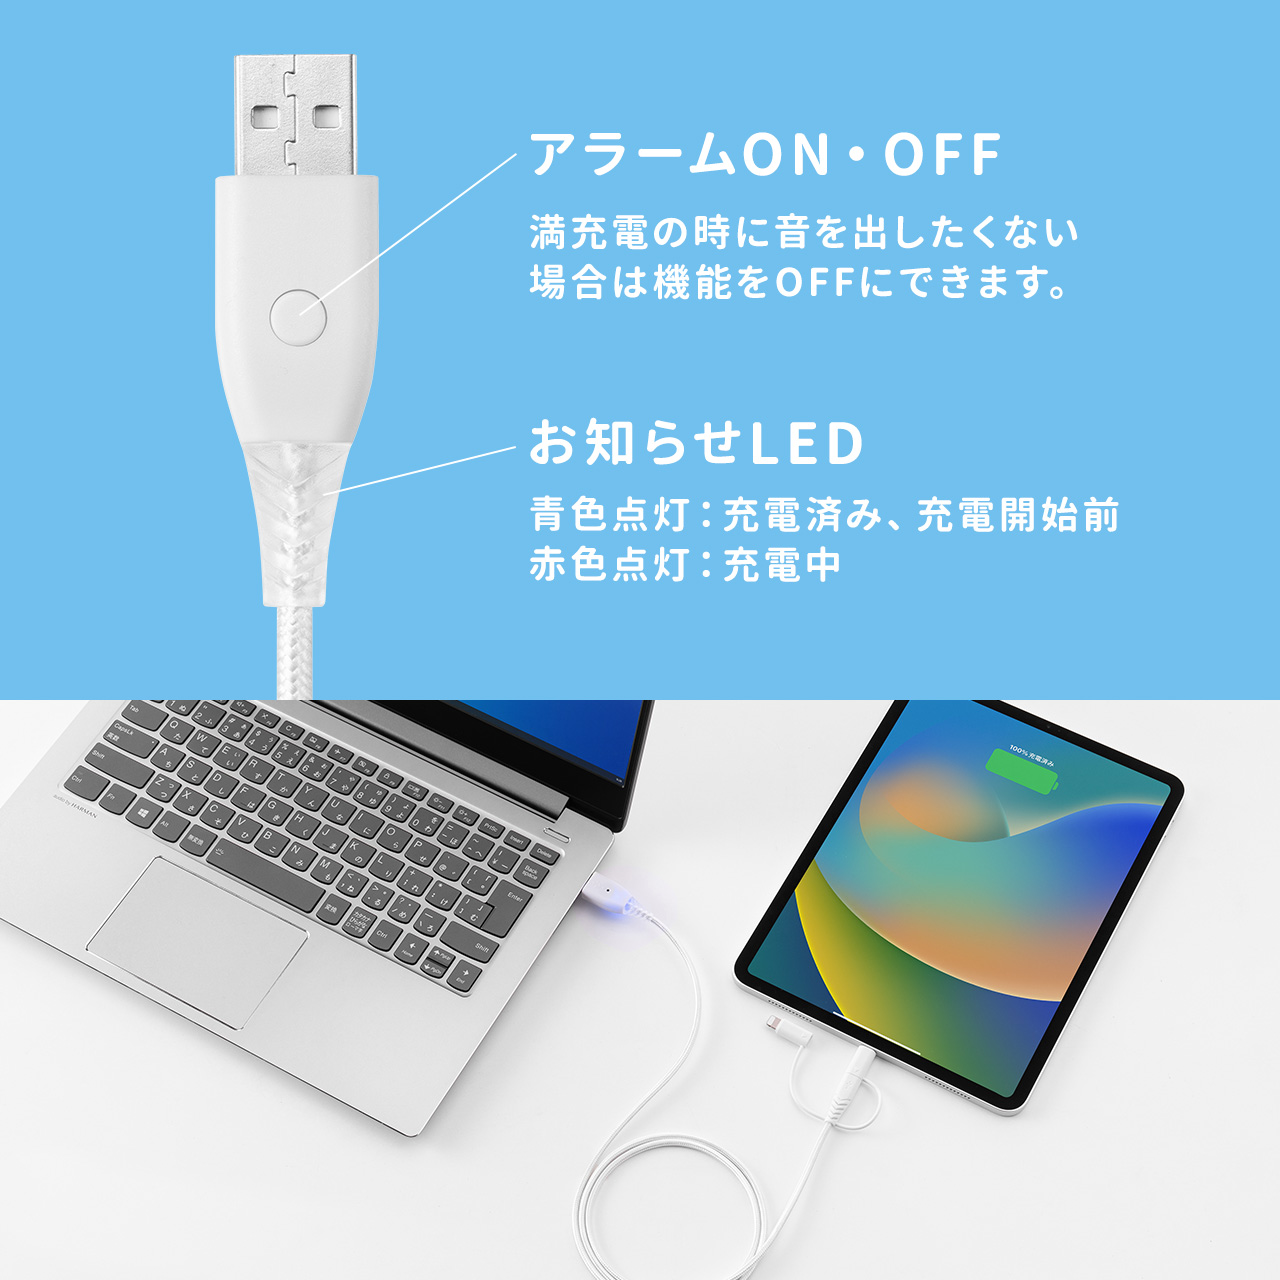 iPhone スマホ 充電ケーブル 充電お知らせ 3in1 Lightning USB Type-C microUSB ケーブル MFi認証品 iPad タブレット 断線に強い 断線しにくい 1m 500-IPLM028W